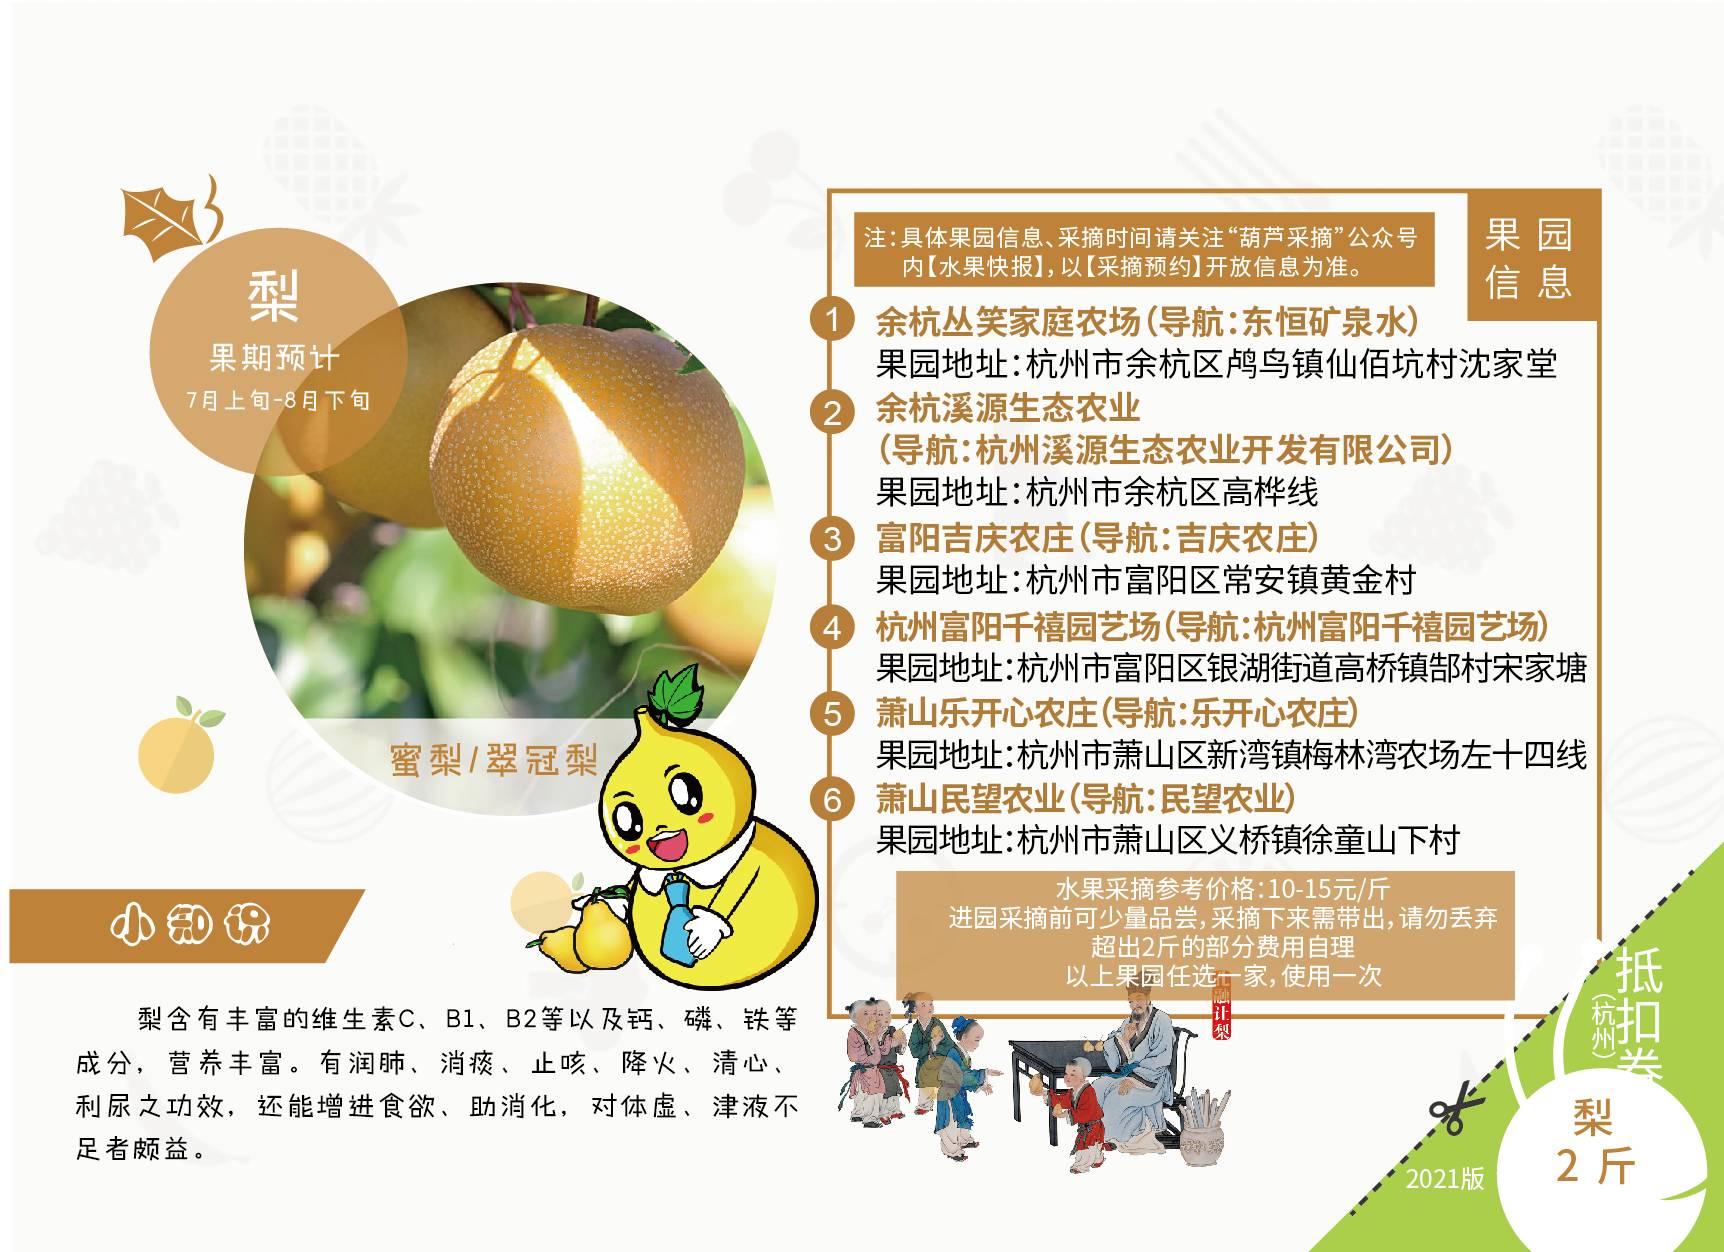 【杭州】【修改版】全新上线！299元抢总价值2400+元的2021杭州升级版水果采摘亲子护照！